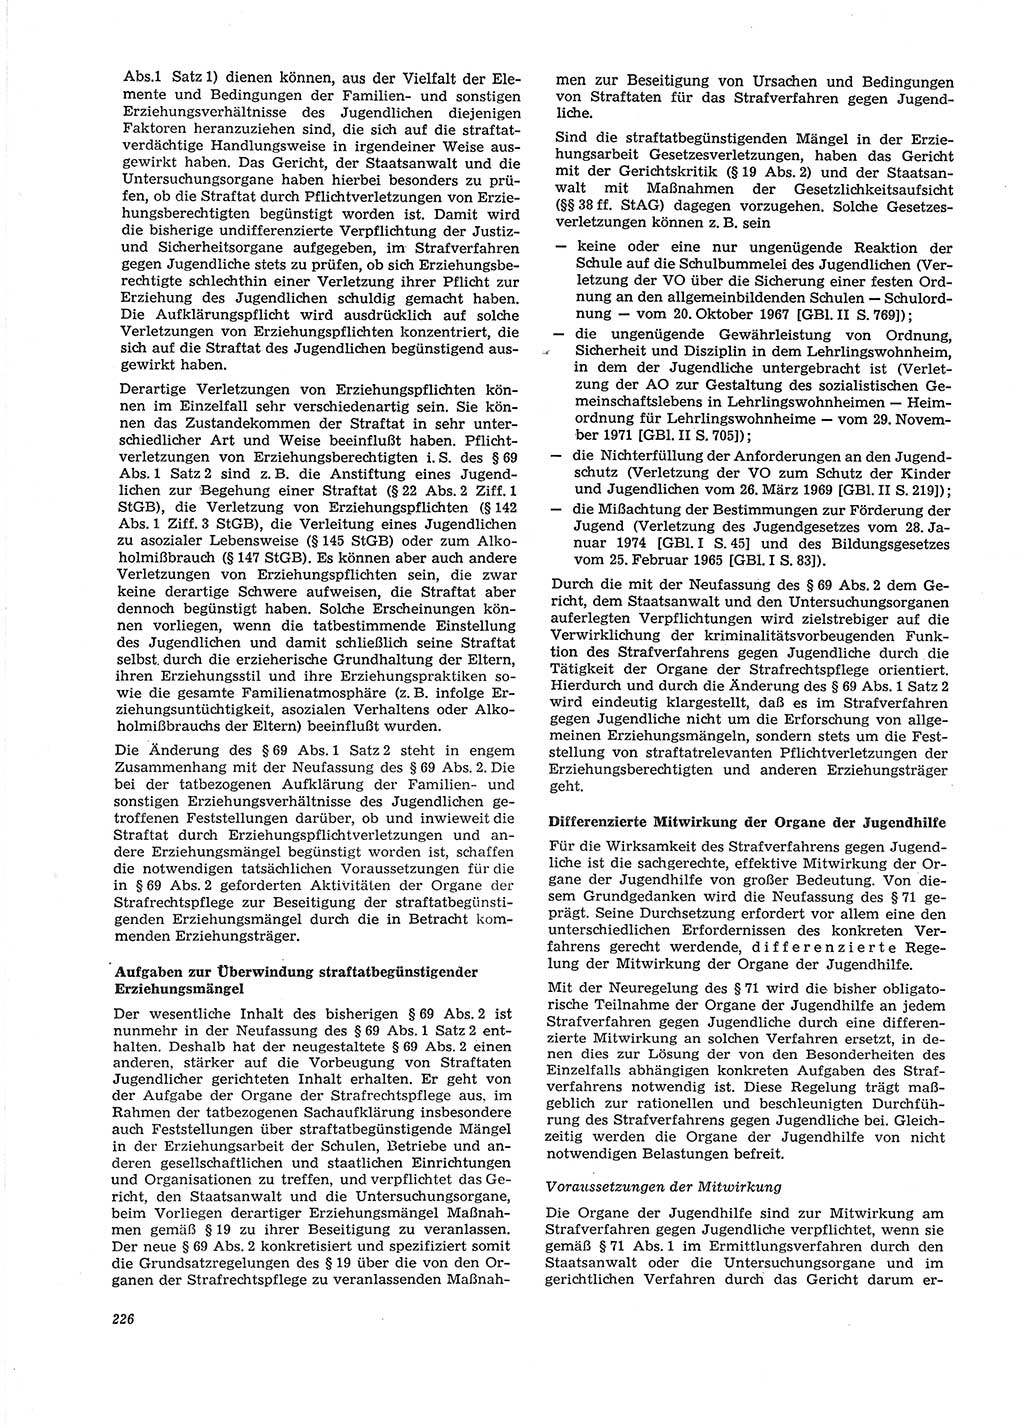 Neue Justiz (NJ), Zeitschrift für Recht und Rechtswissenschaft [Deutsche Demokratische Republik (DDR)], 29. Jahrgang 1975, Seite 226 (NJ DDR 1975, S. 226)